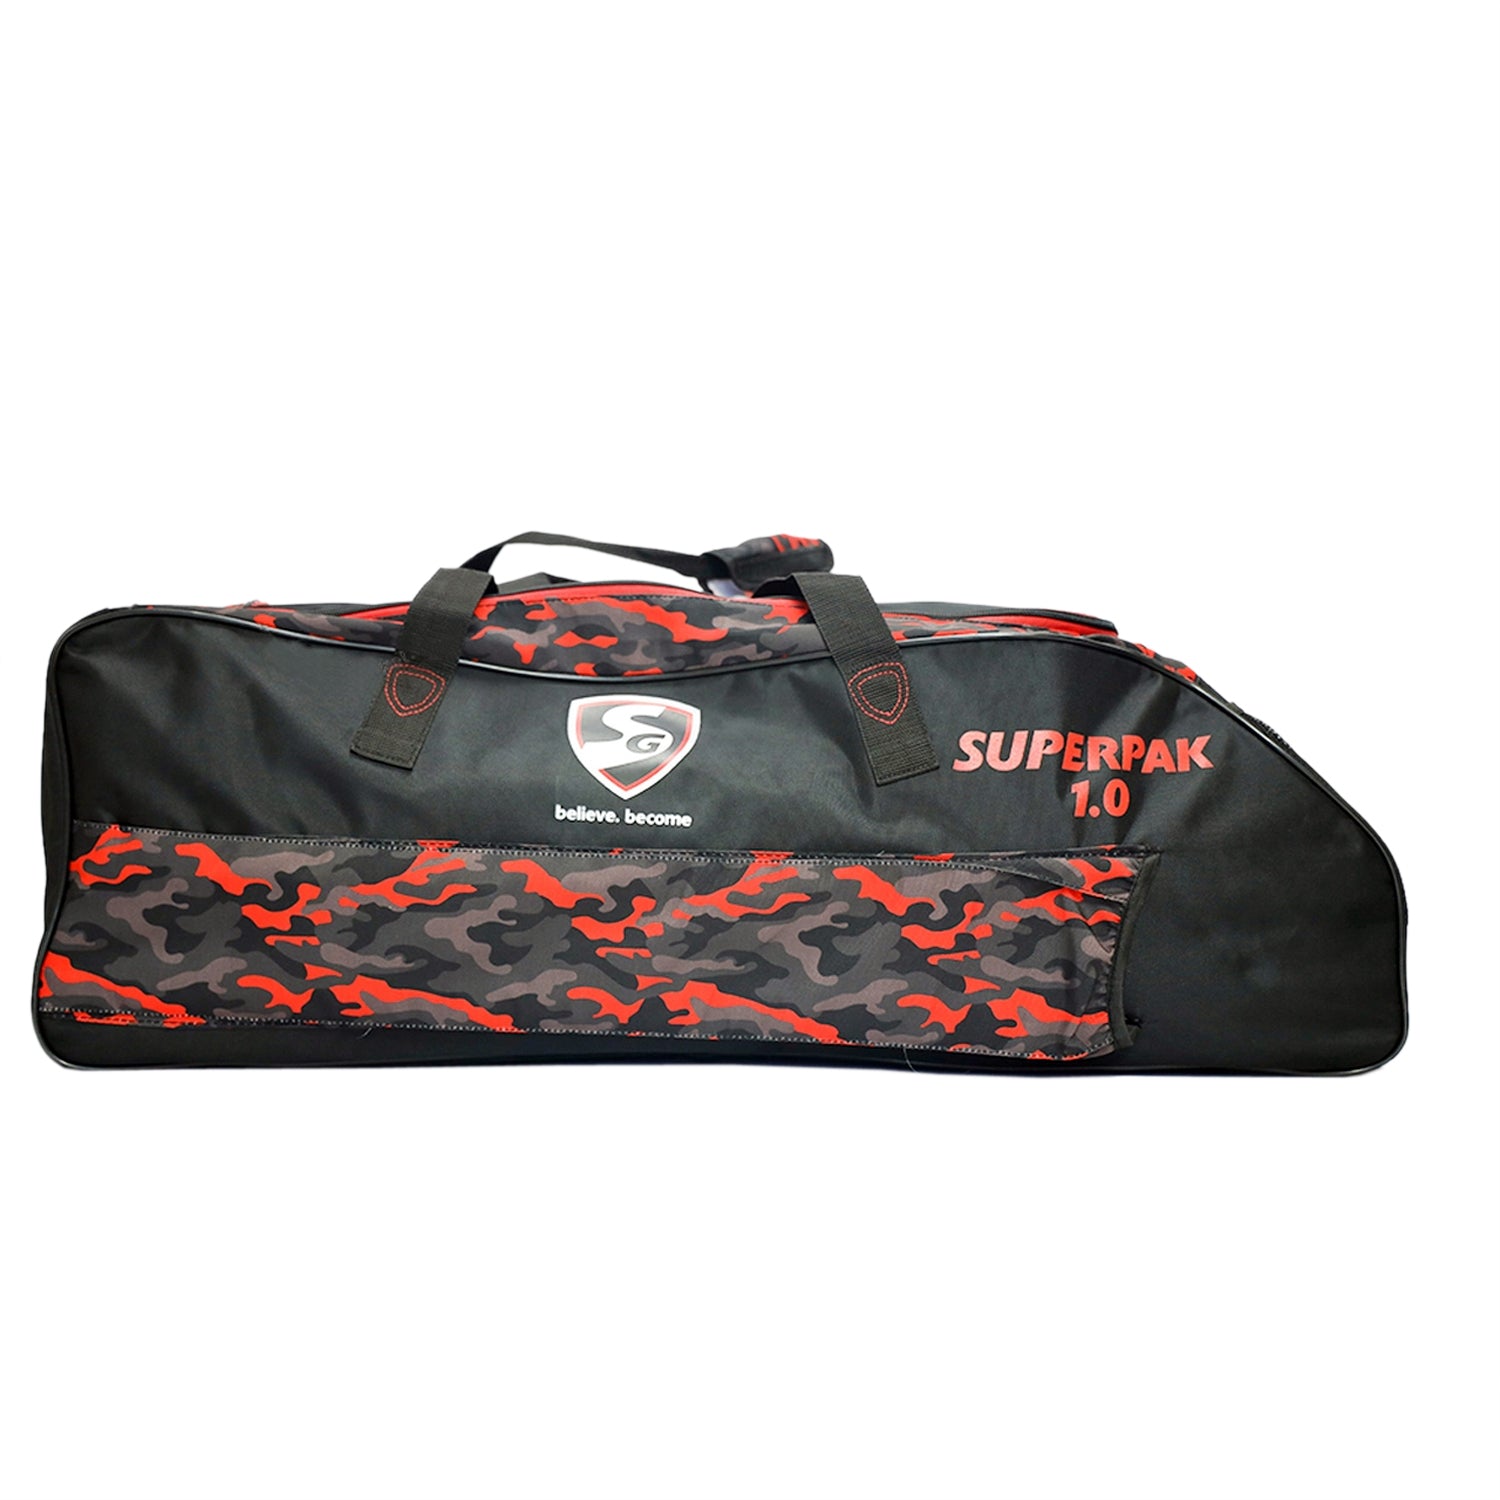 SG Superpak 1.0 Kit Cricket Kit Bag, Large - Best Price online Prokicksports.com